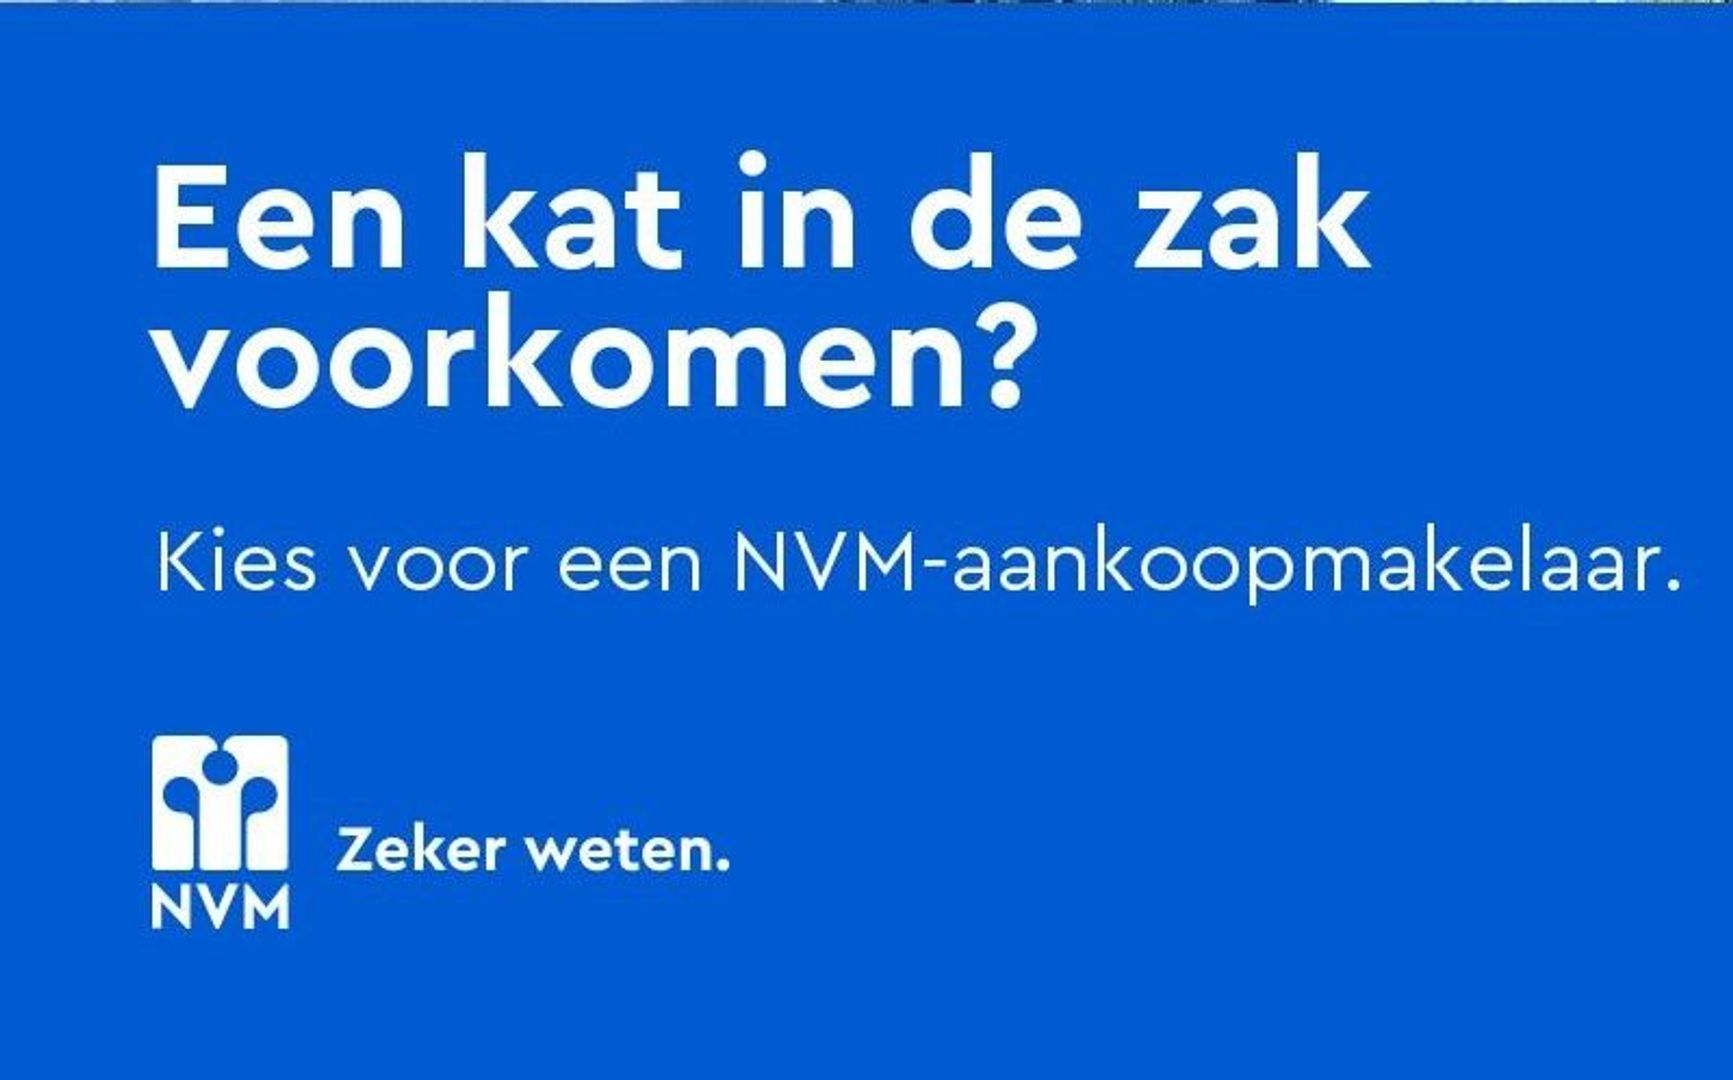 NVM-aankoopmakelaar